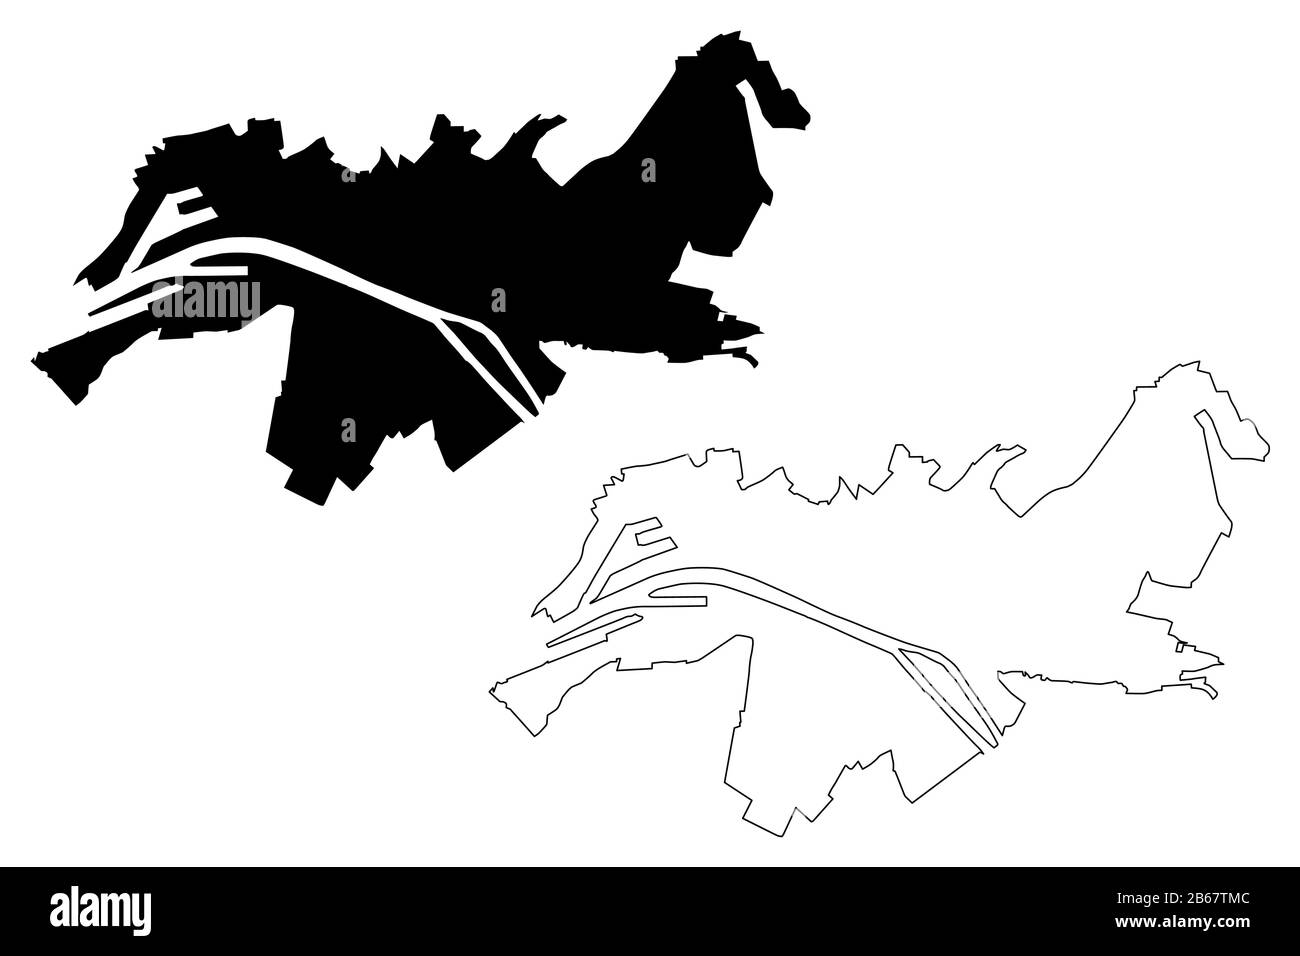 Rouen City (République française, France) illustration vectorielle de carte, esquisse de griffonnage carte de la ville de Rouen Illustration de Vecteur